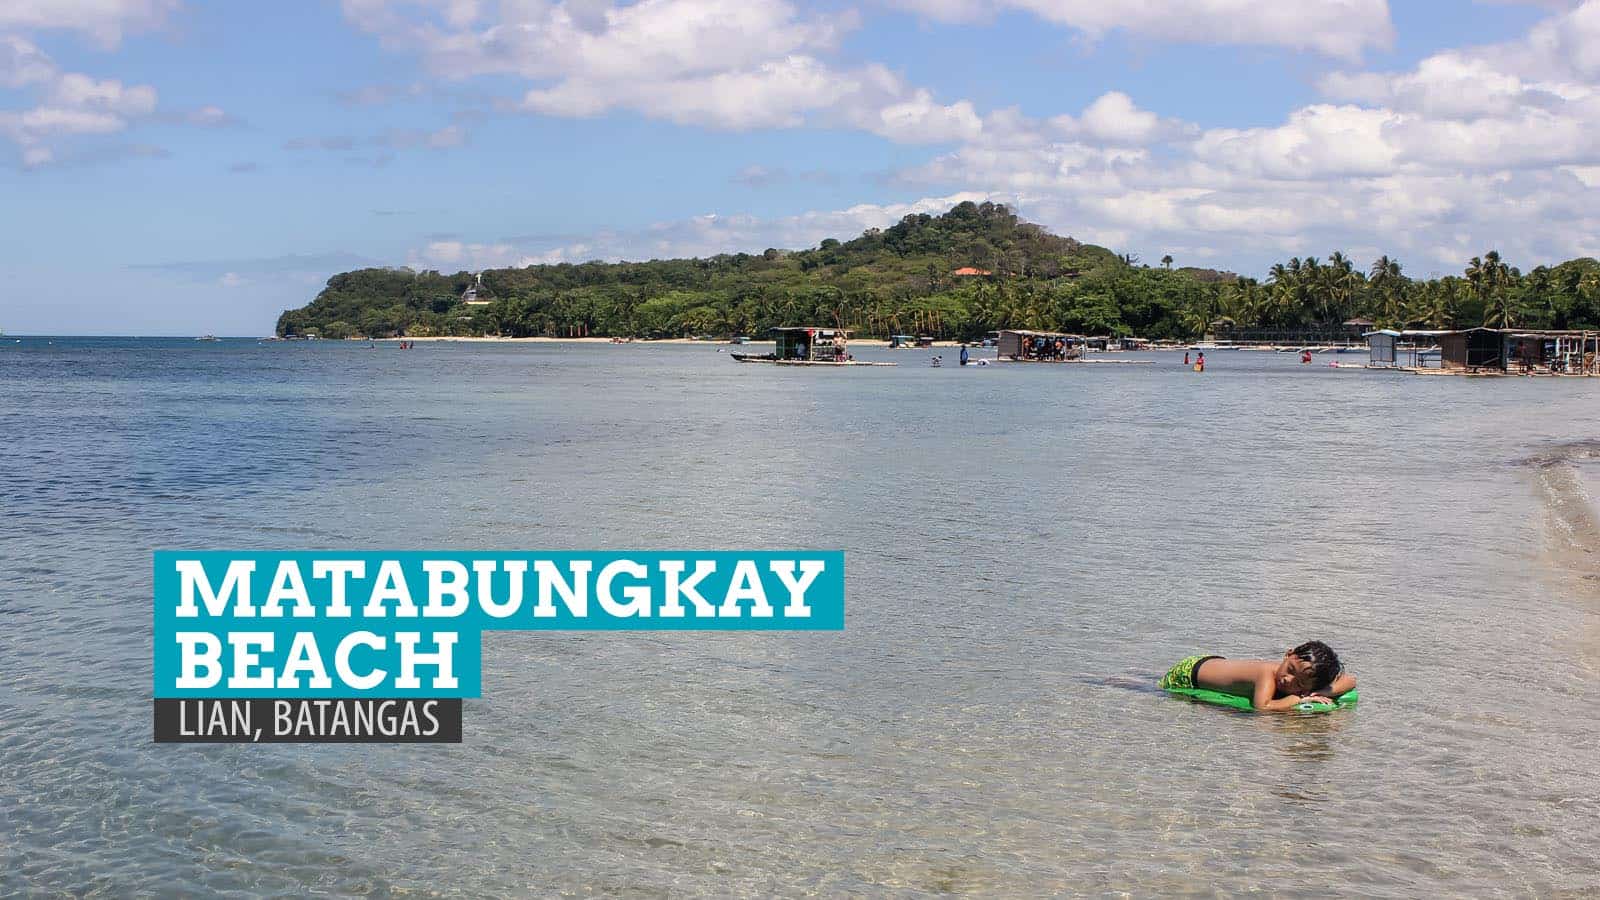 Matabungkay海滩:菲律宾八丹加斯的垃圾记忆